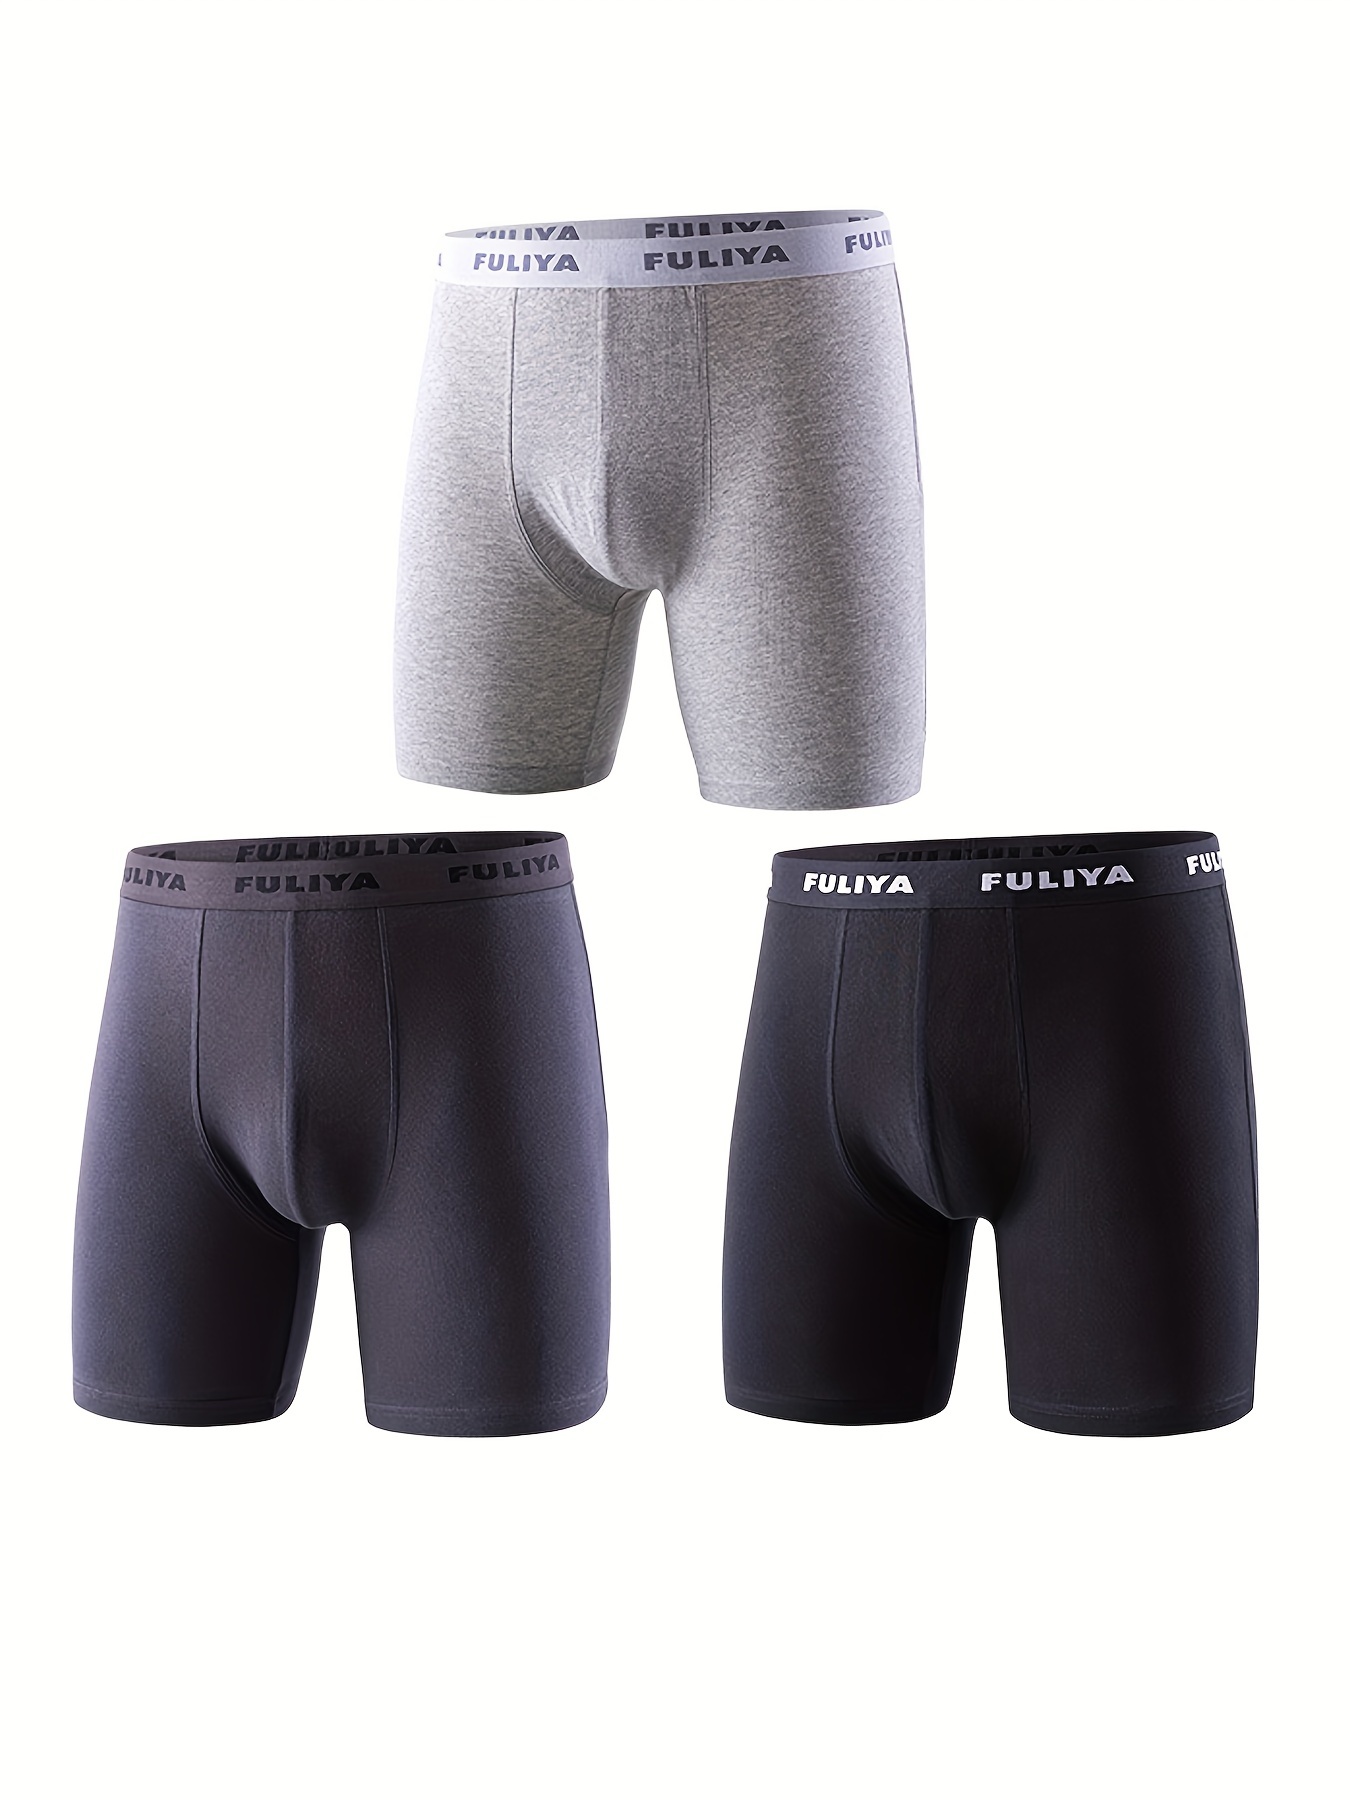 3pcs Men's Quick Dry Boxer Briefs Underwear, Long Leg Performance  Compression Boxer Briefs